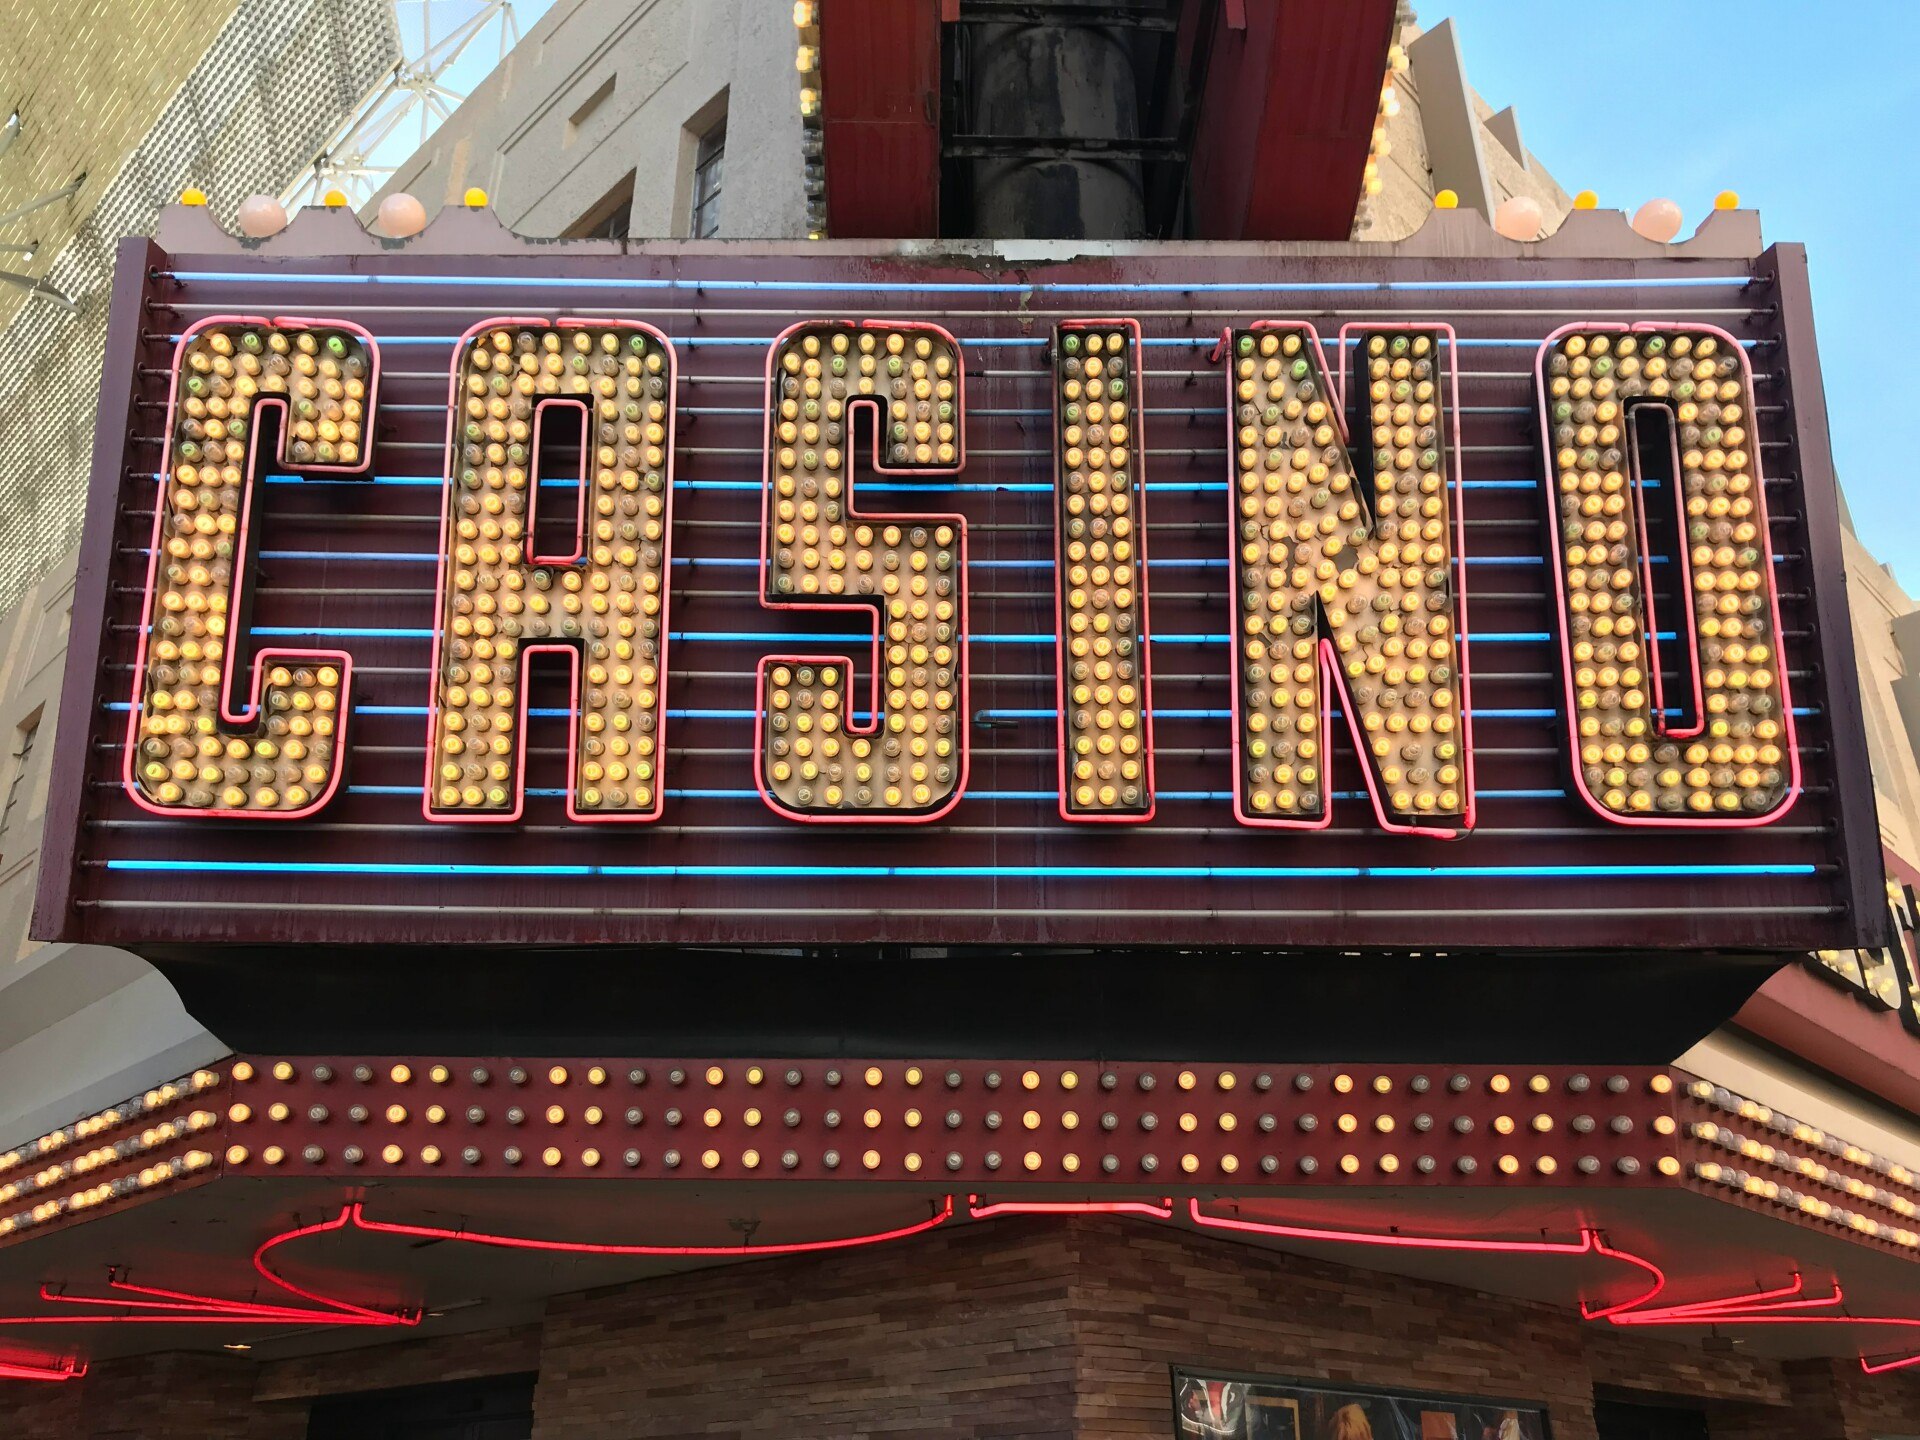 ¿Eres bueno en play casino online? Aquí hay un cuestionario rápido para averiguarlo